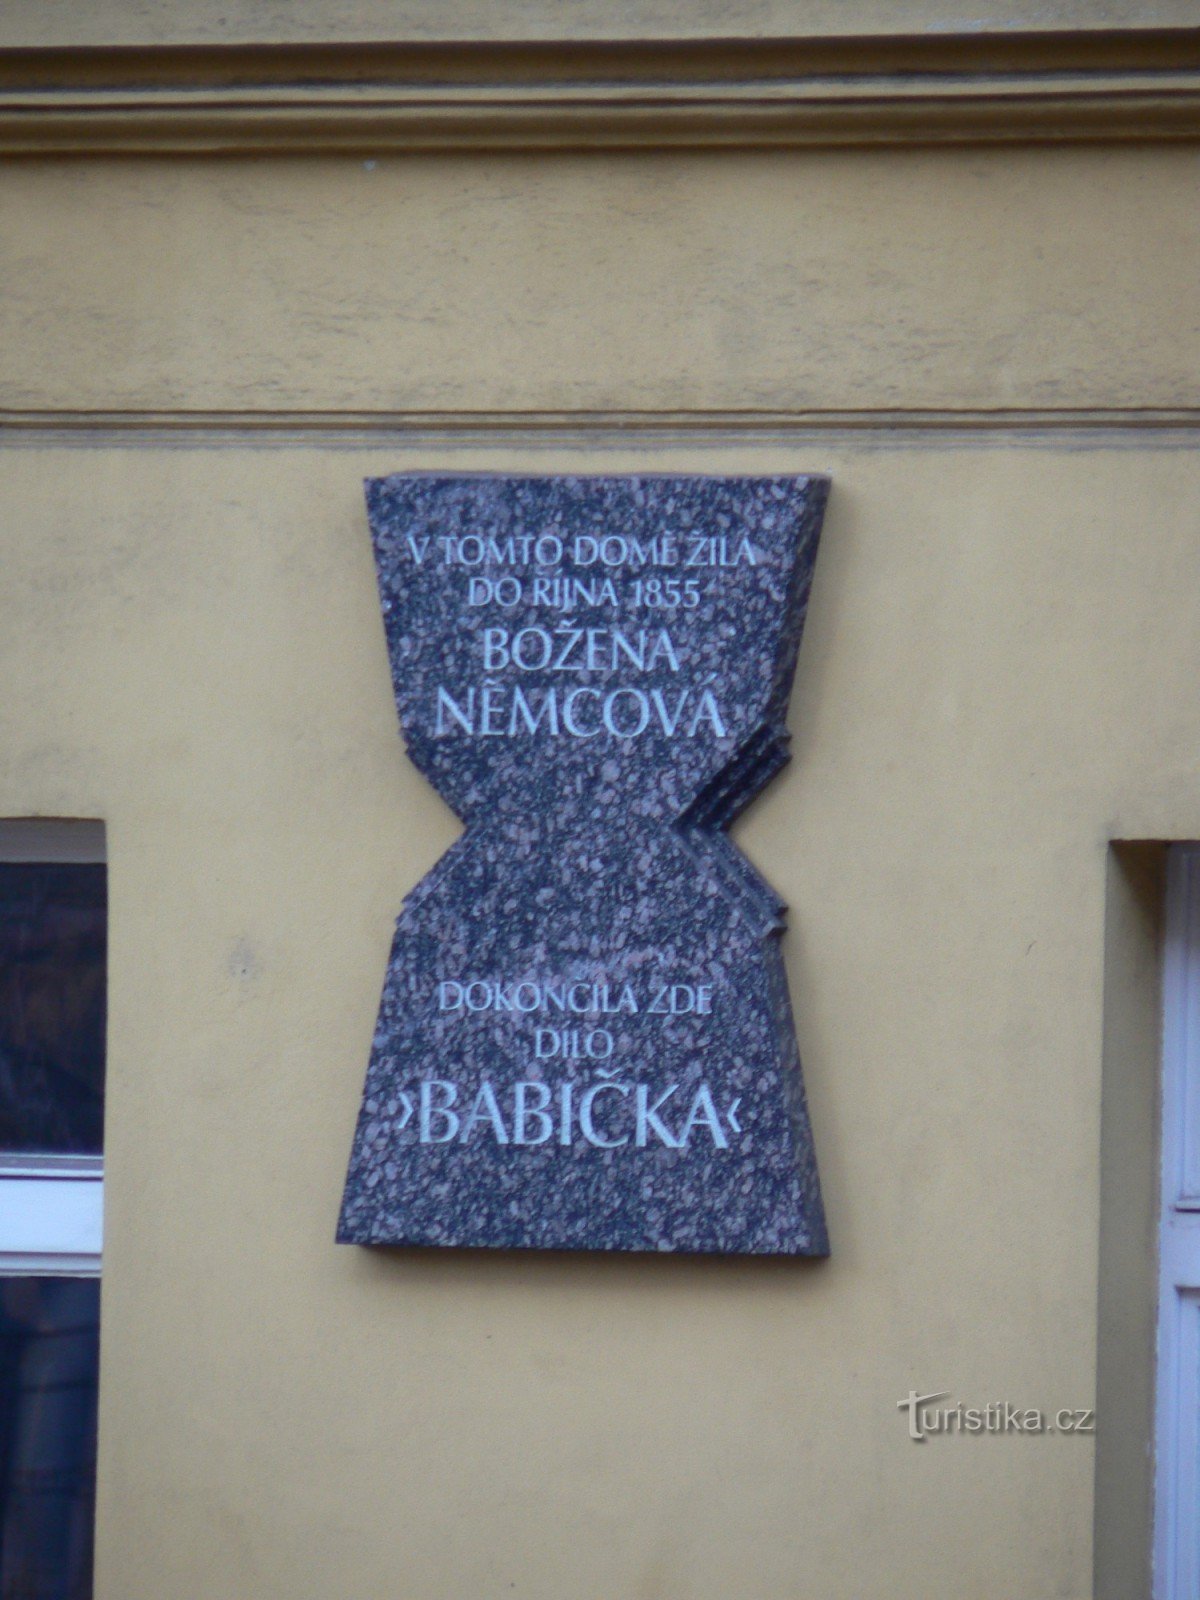 Tấm bảng tưởng niệm Bozena Němcová